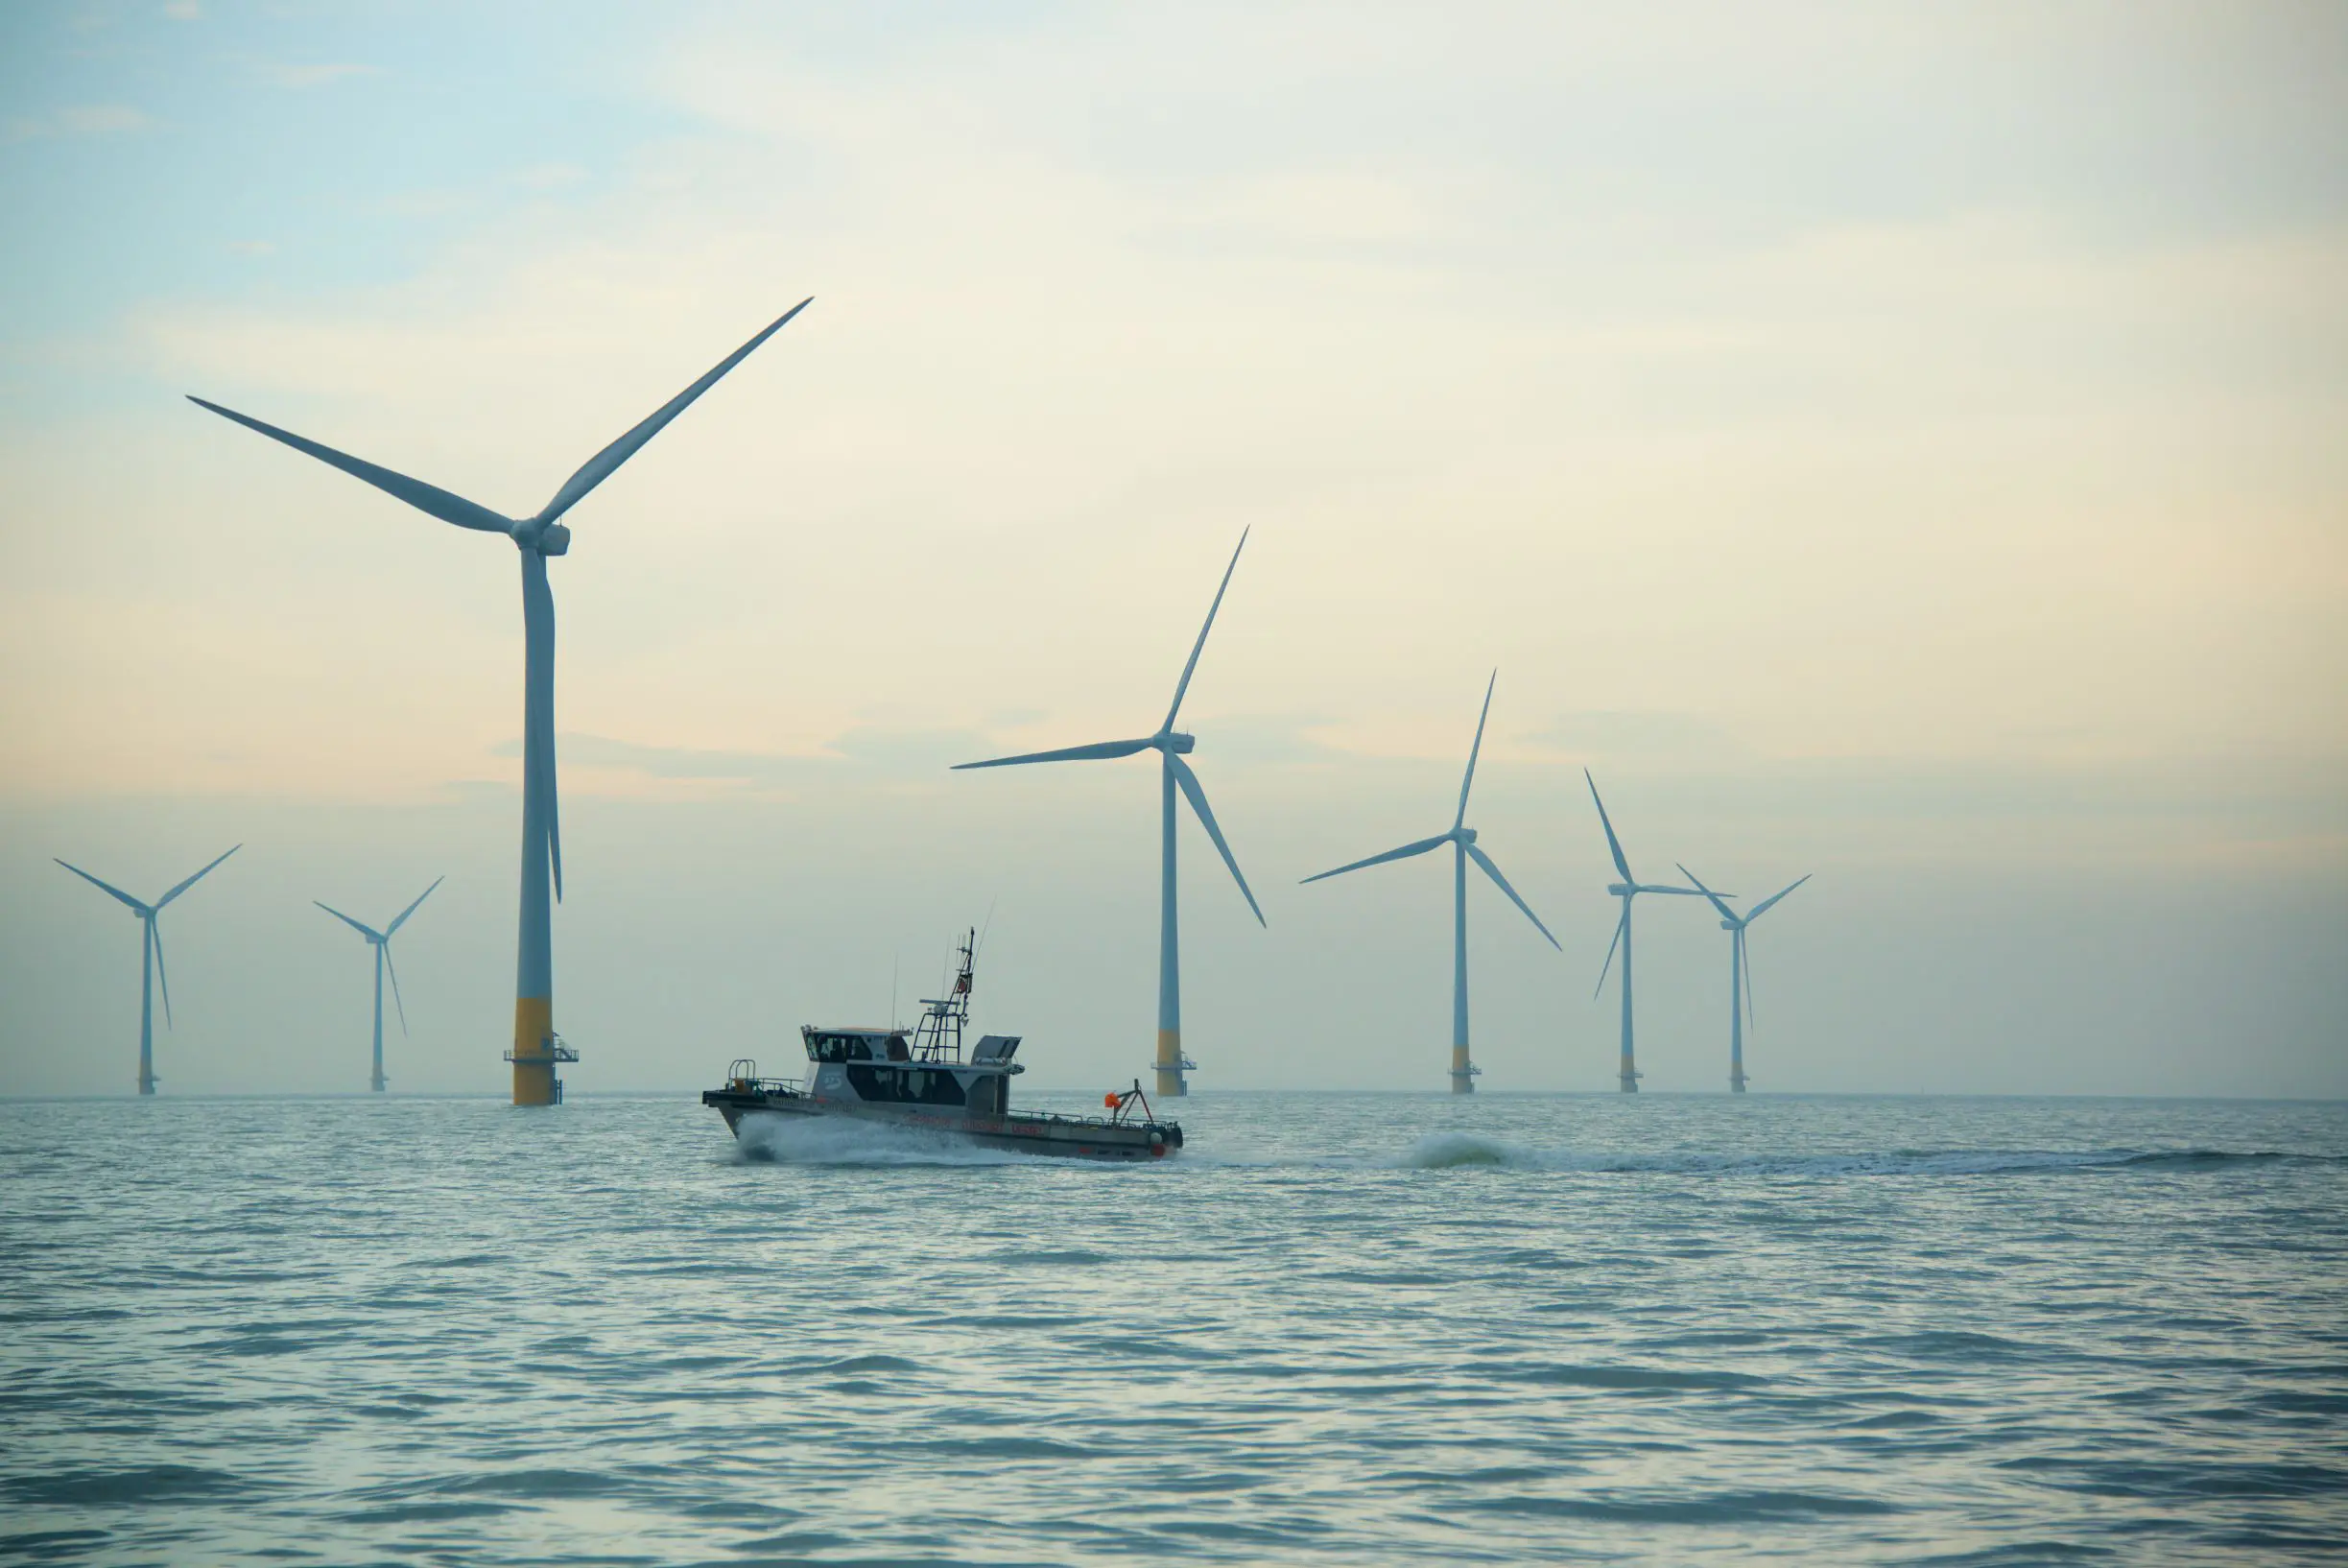 Vattenfall Offshore Wind Farm